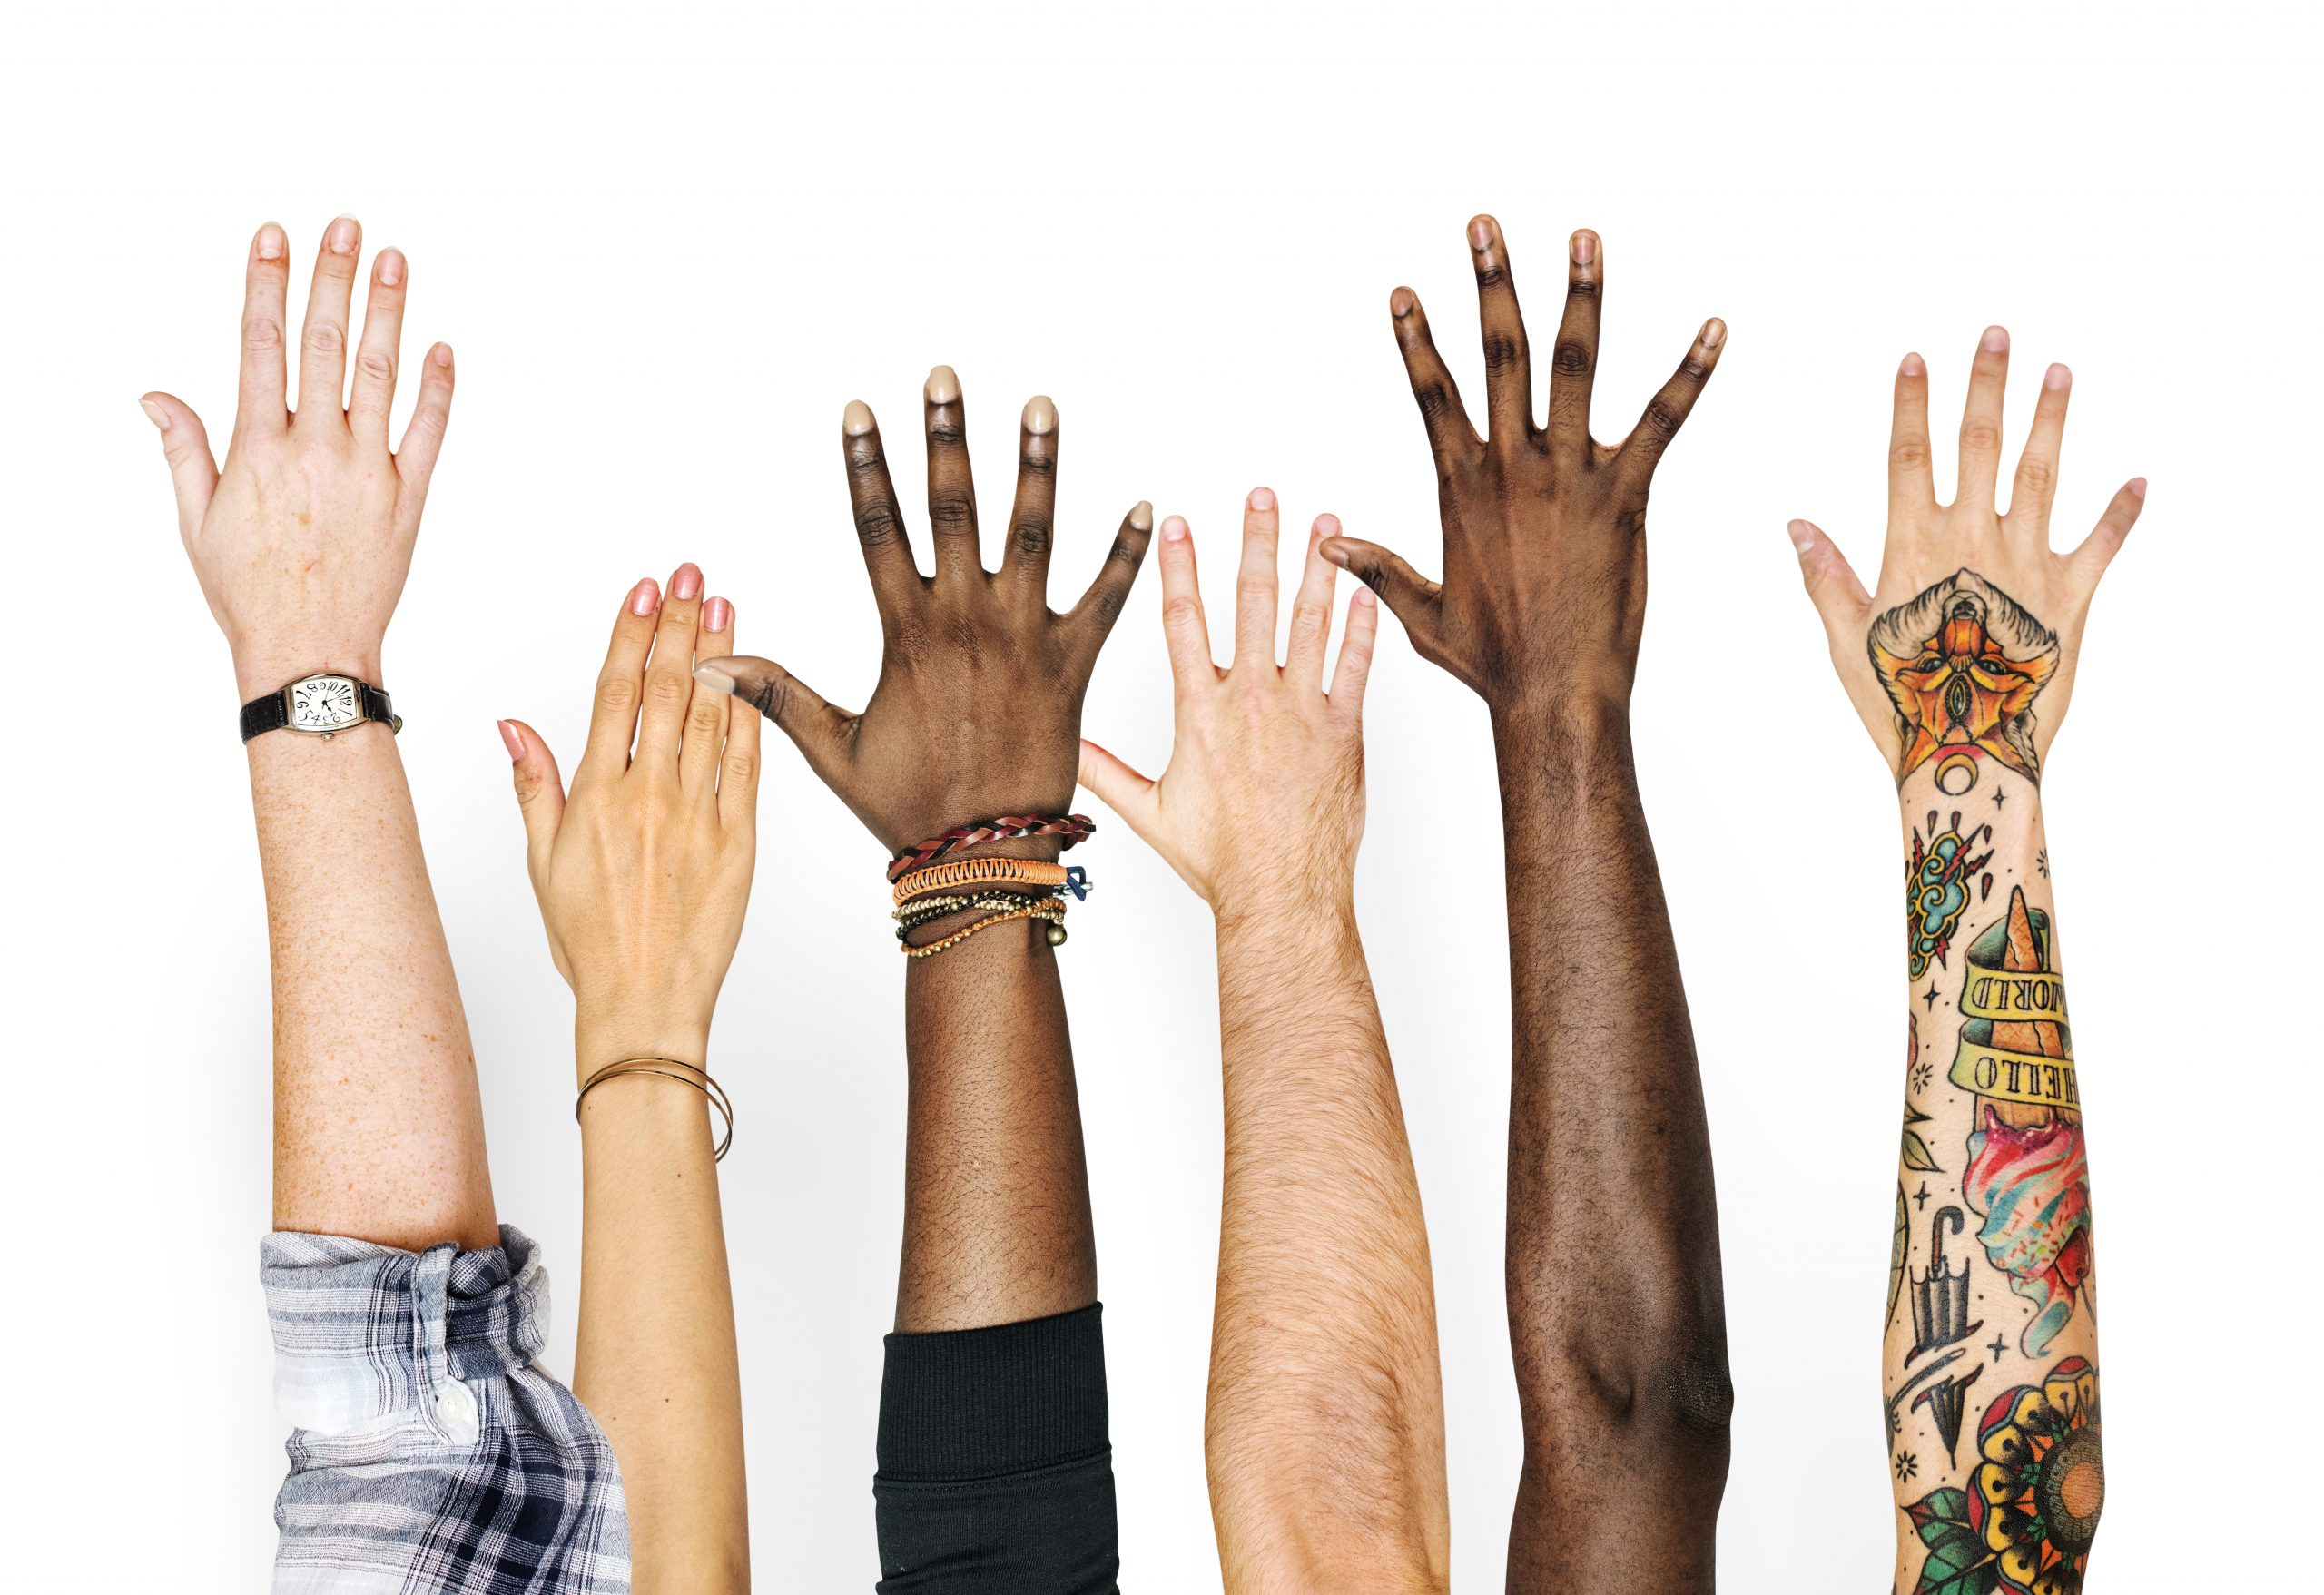 Understanding cultures. Этническое разнообразие. Поднятая рука. Мультикультурализм. Многообразие руки.